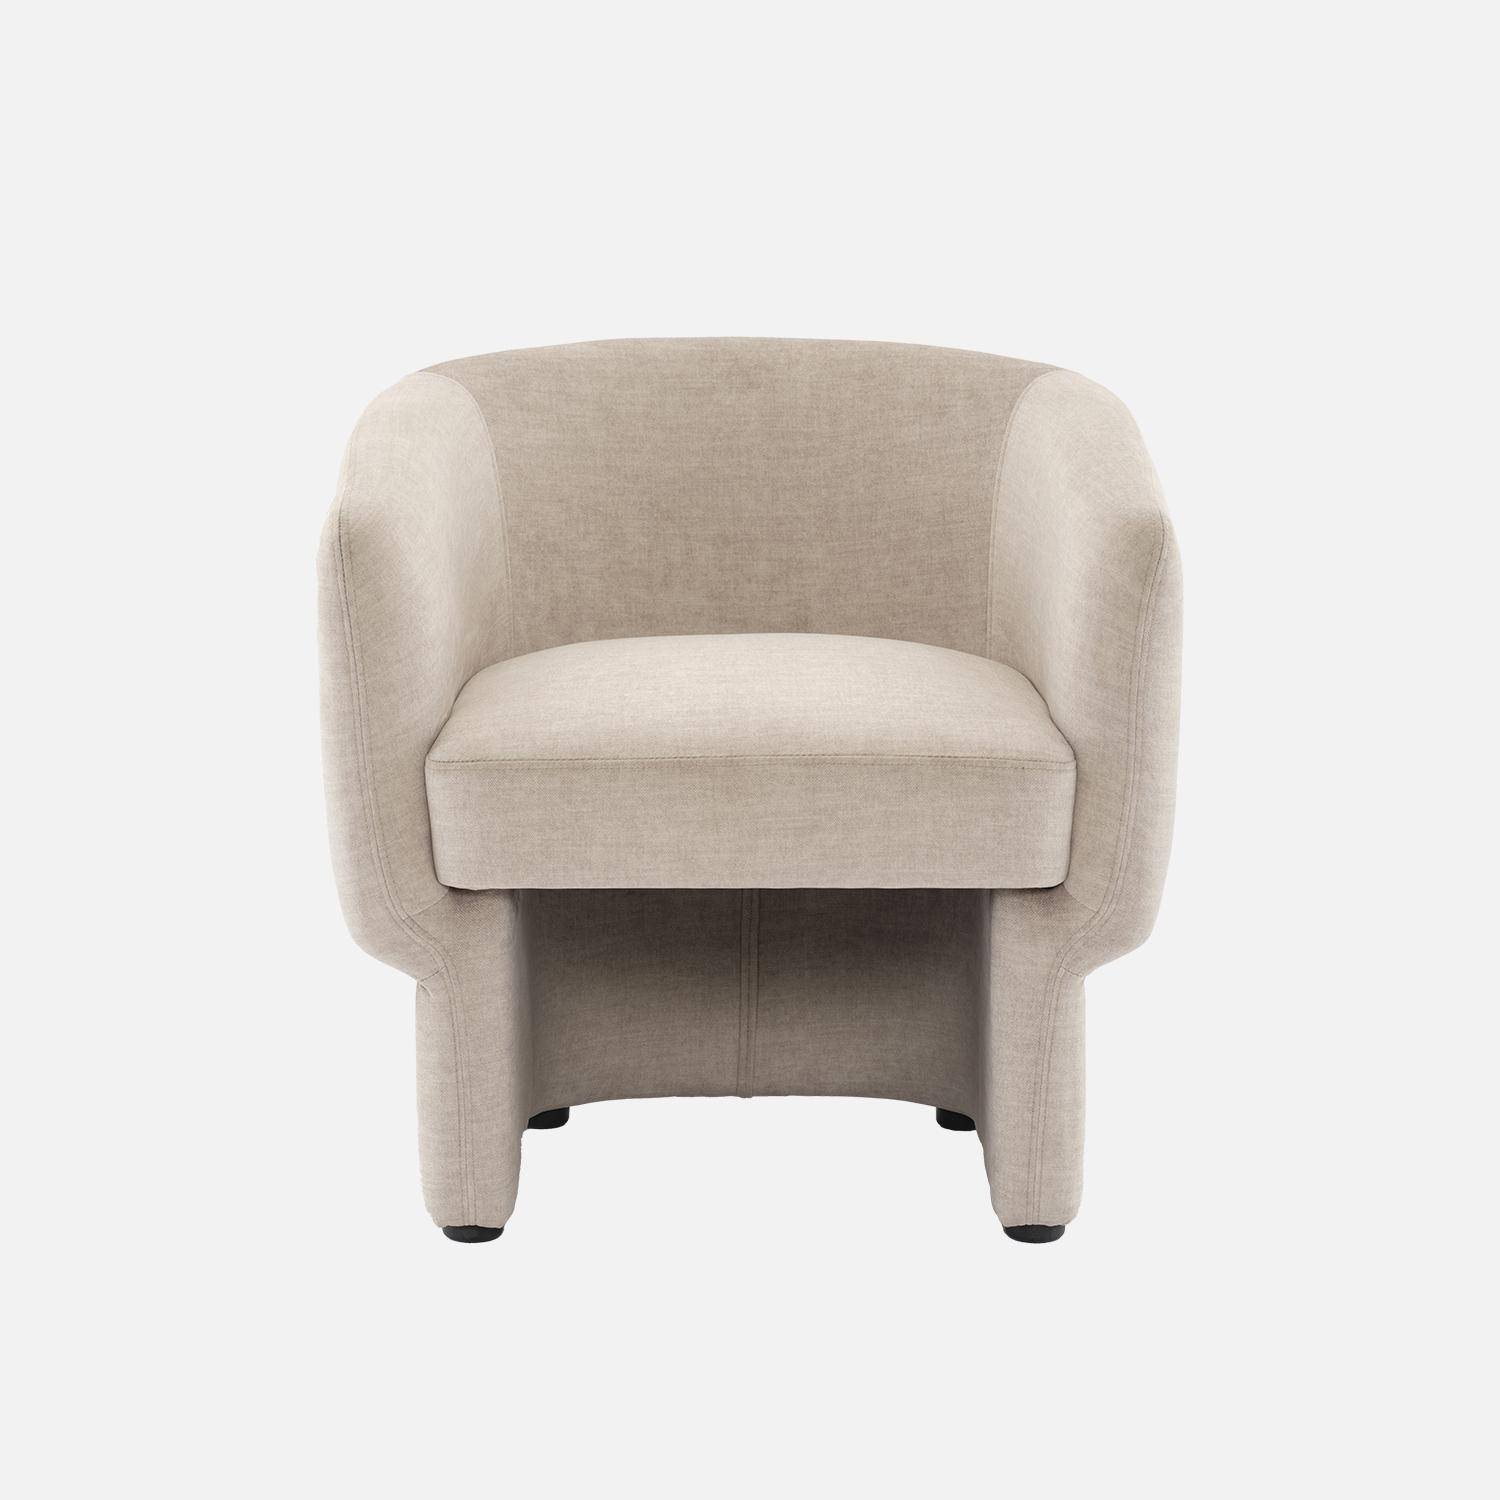 Beige stoffen fauteuil, Dolce, L 70 x P 70 x H 72cm, eucalyptushouten structuur,sweeek,Photo4